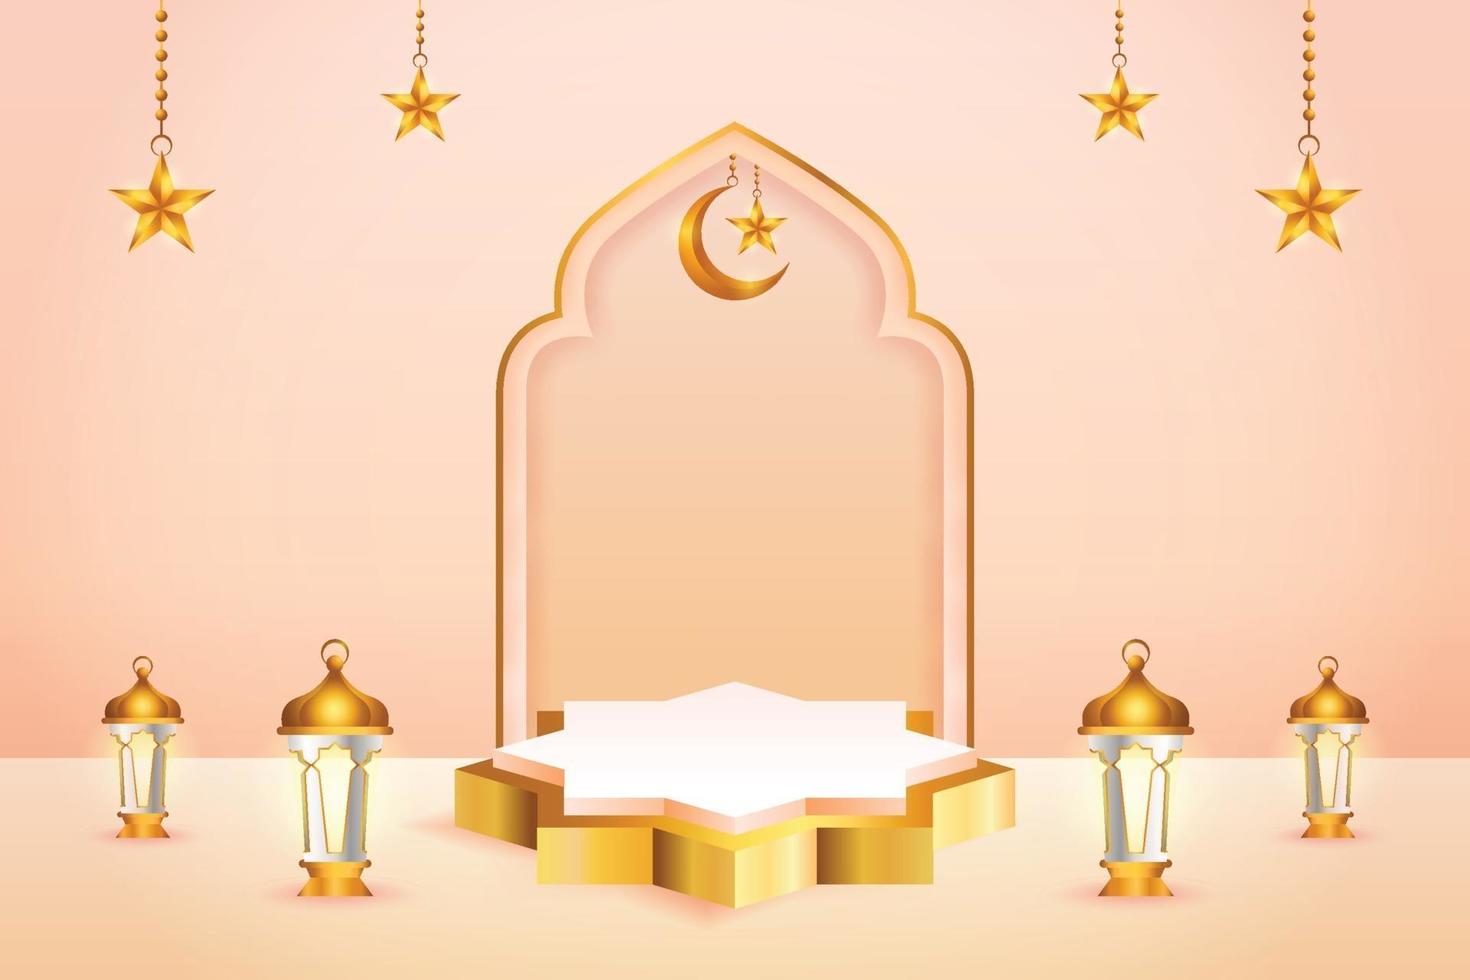 Affichage de produit 3D couleur pêche et or sur le thème du podium islamique avec croissant de lune, lanterne et étoile pour le ramadan vecteur